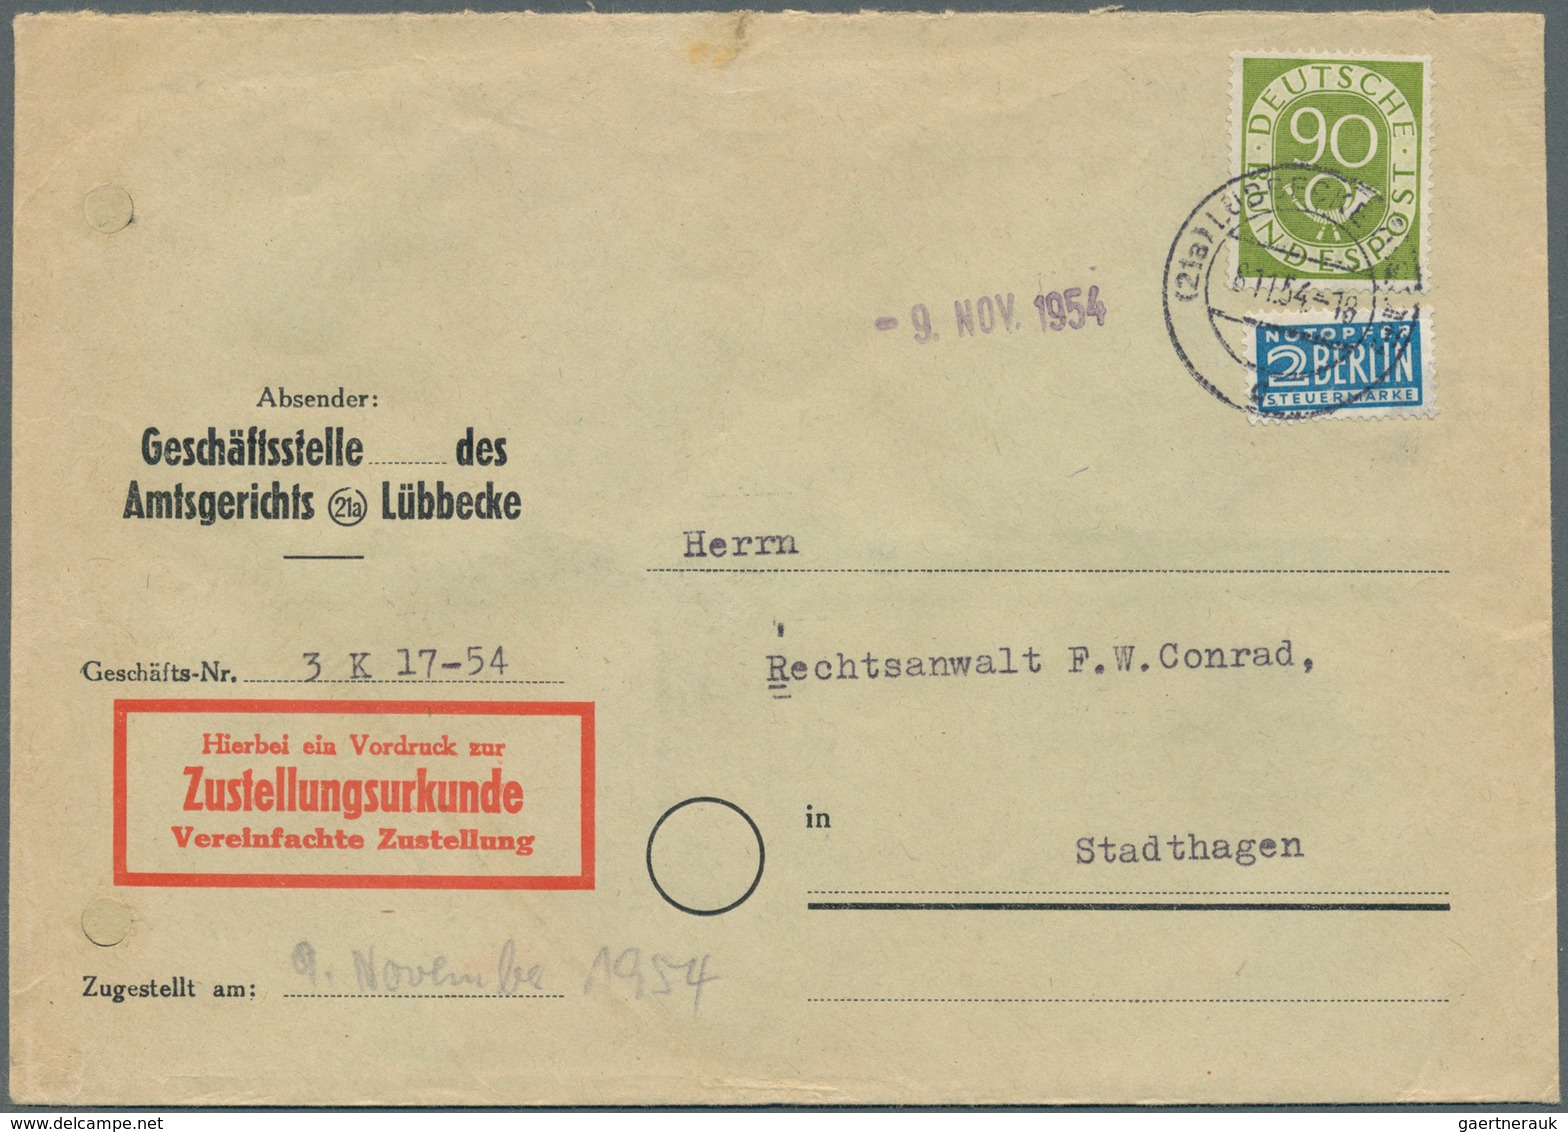 Bundesrepublik Deutschland: 1951, Posthorn 75 Pfg. auf Einschreib-Fernbrief-Eigenhändig aus Paderbor